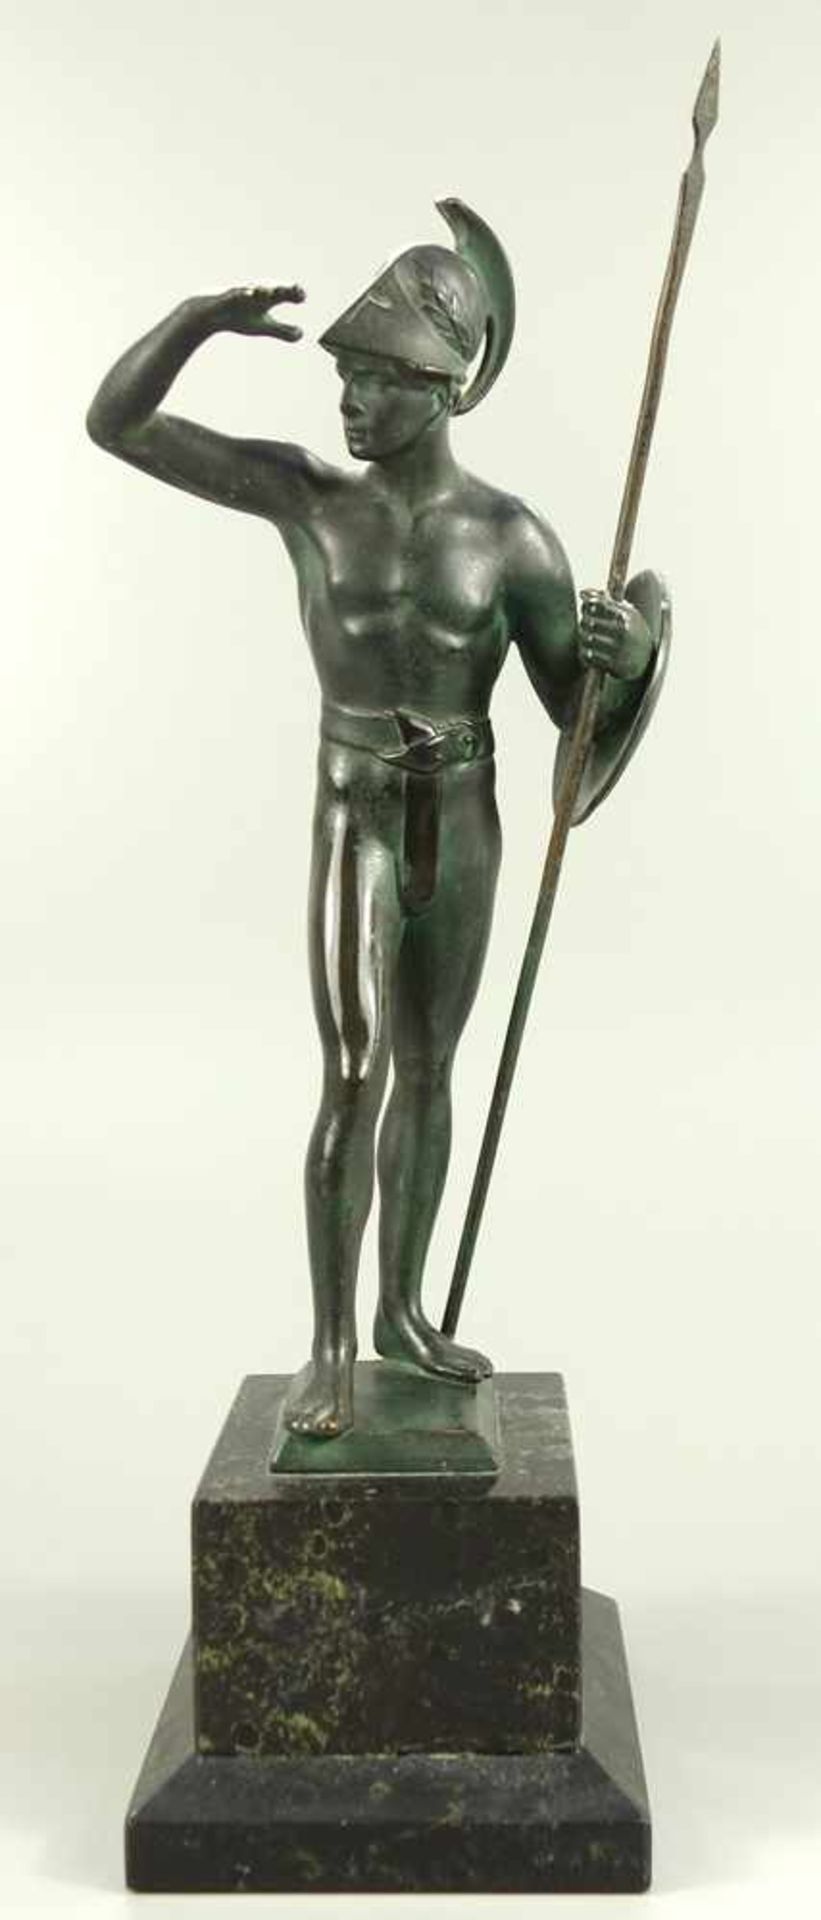 Stehender Krieger, um 1920, Bronze, dunkel patiniert, halbnackter Krieger mit Helm, eine Lanze und